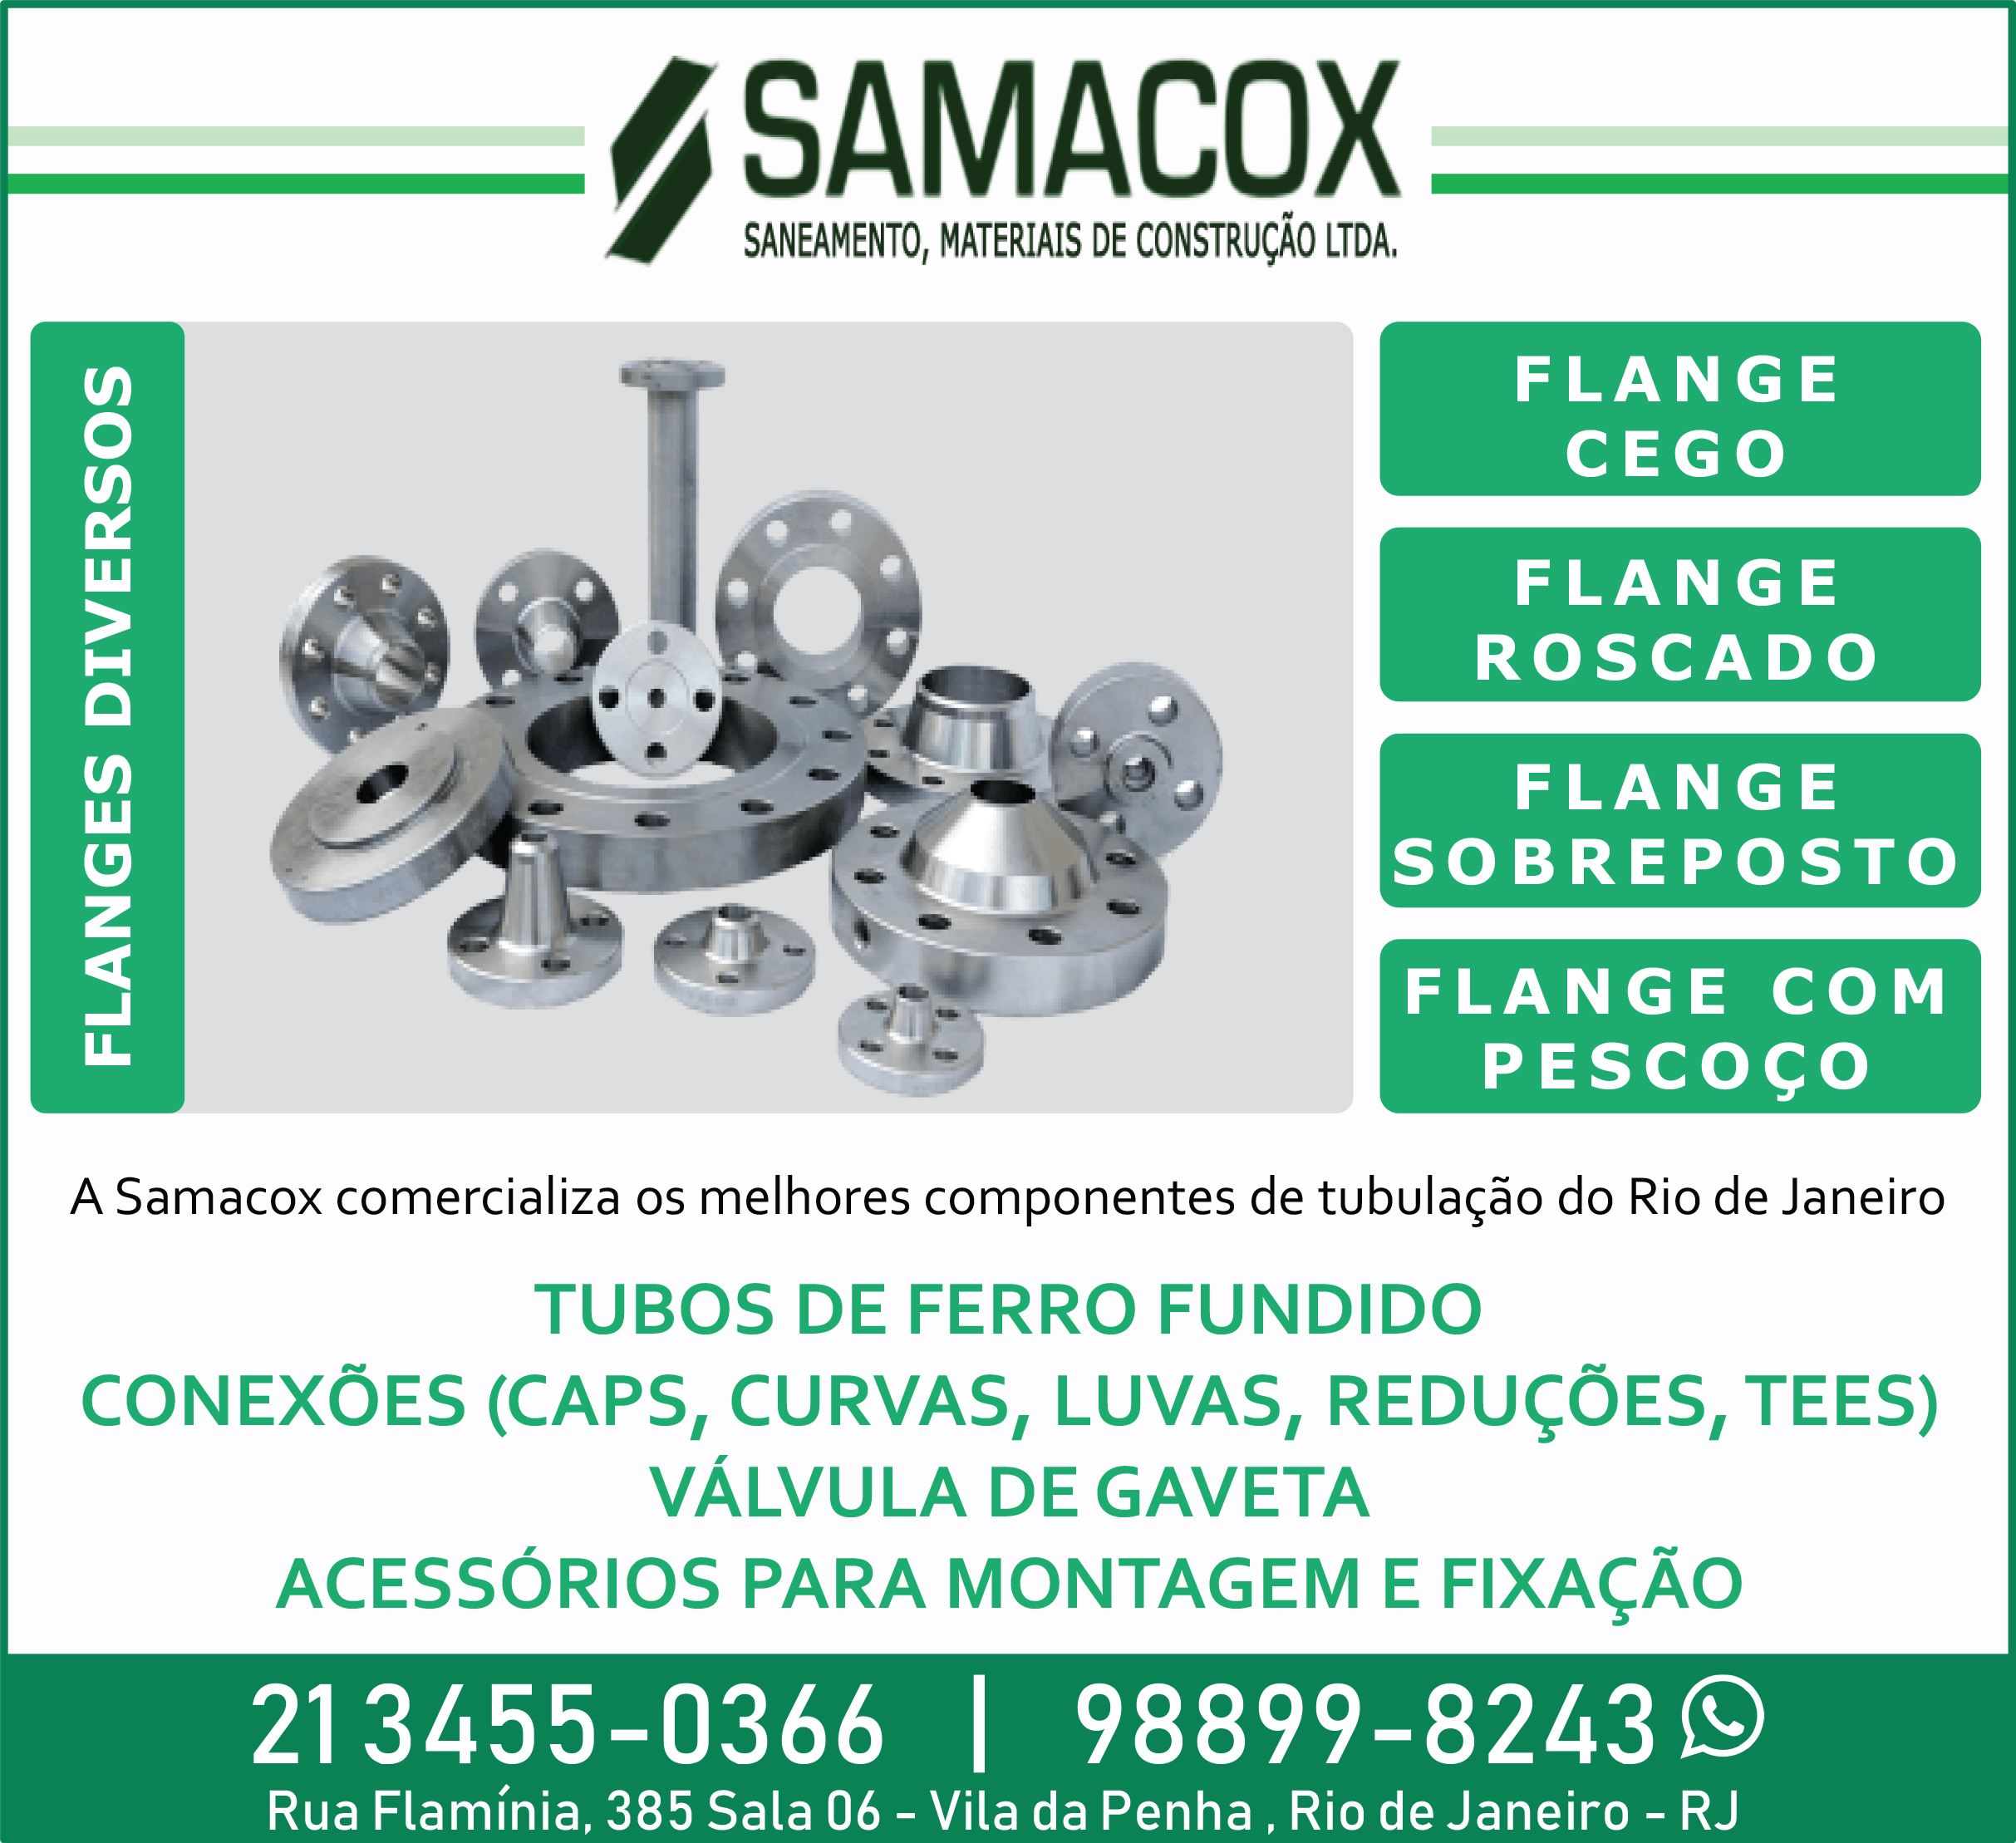 Samacox Flanges e Tubos de Aço para Saneamento, Tubulações e Construções em Geral